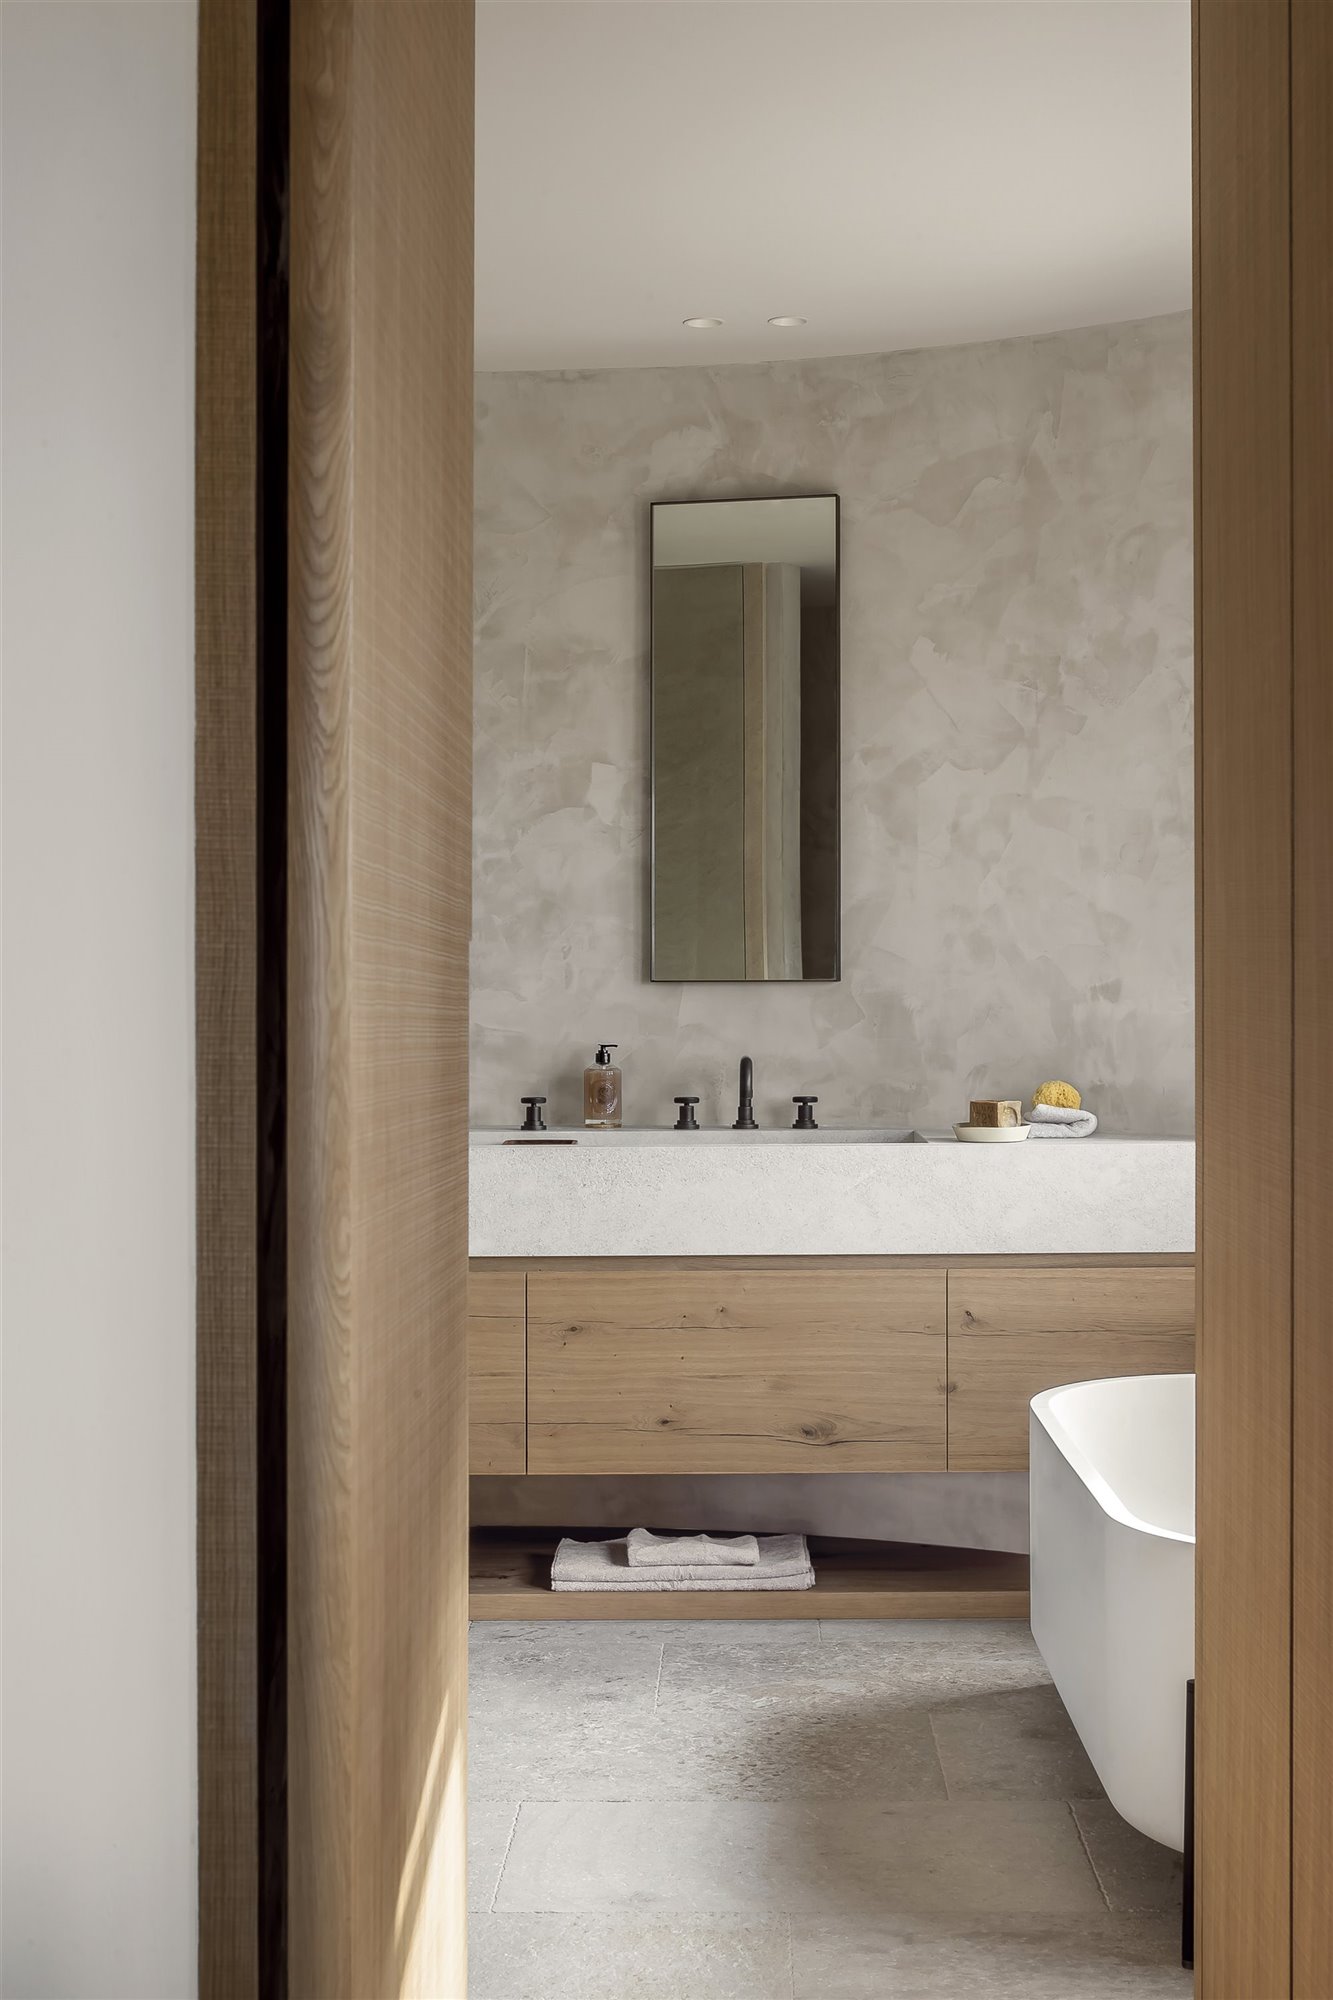 baño rústico con pared de piedra y mueble de madera